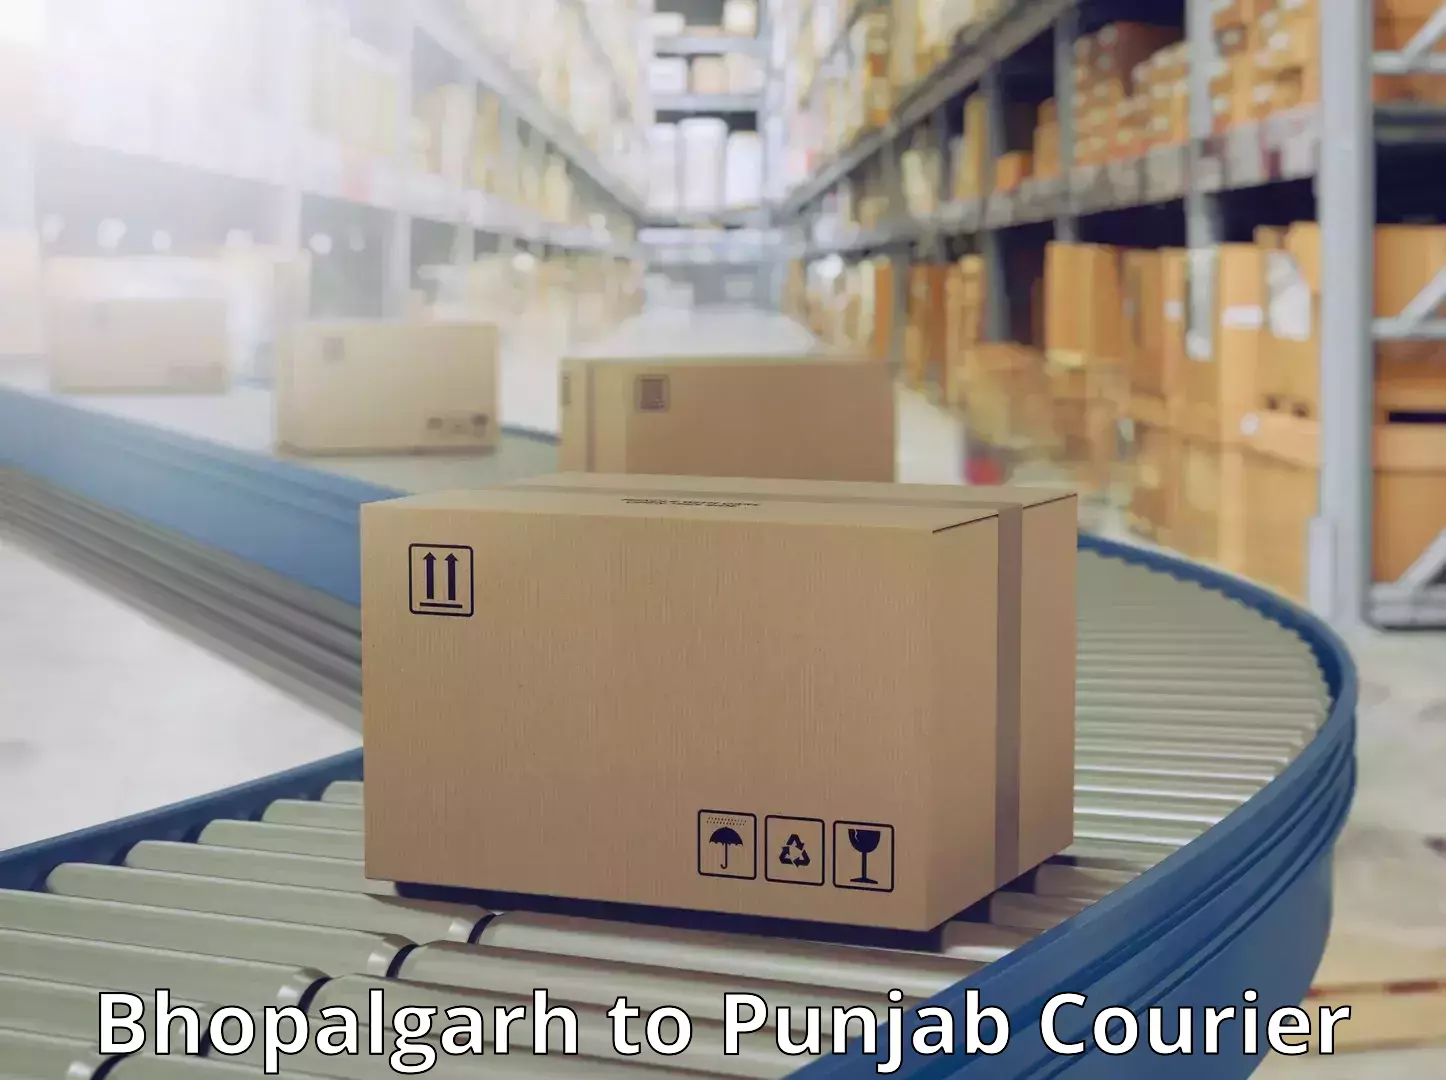 Affordable parcel service Bhopalgarh to Bhadaur